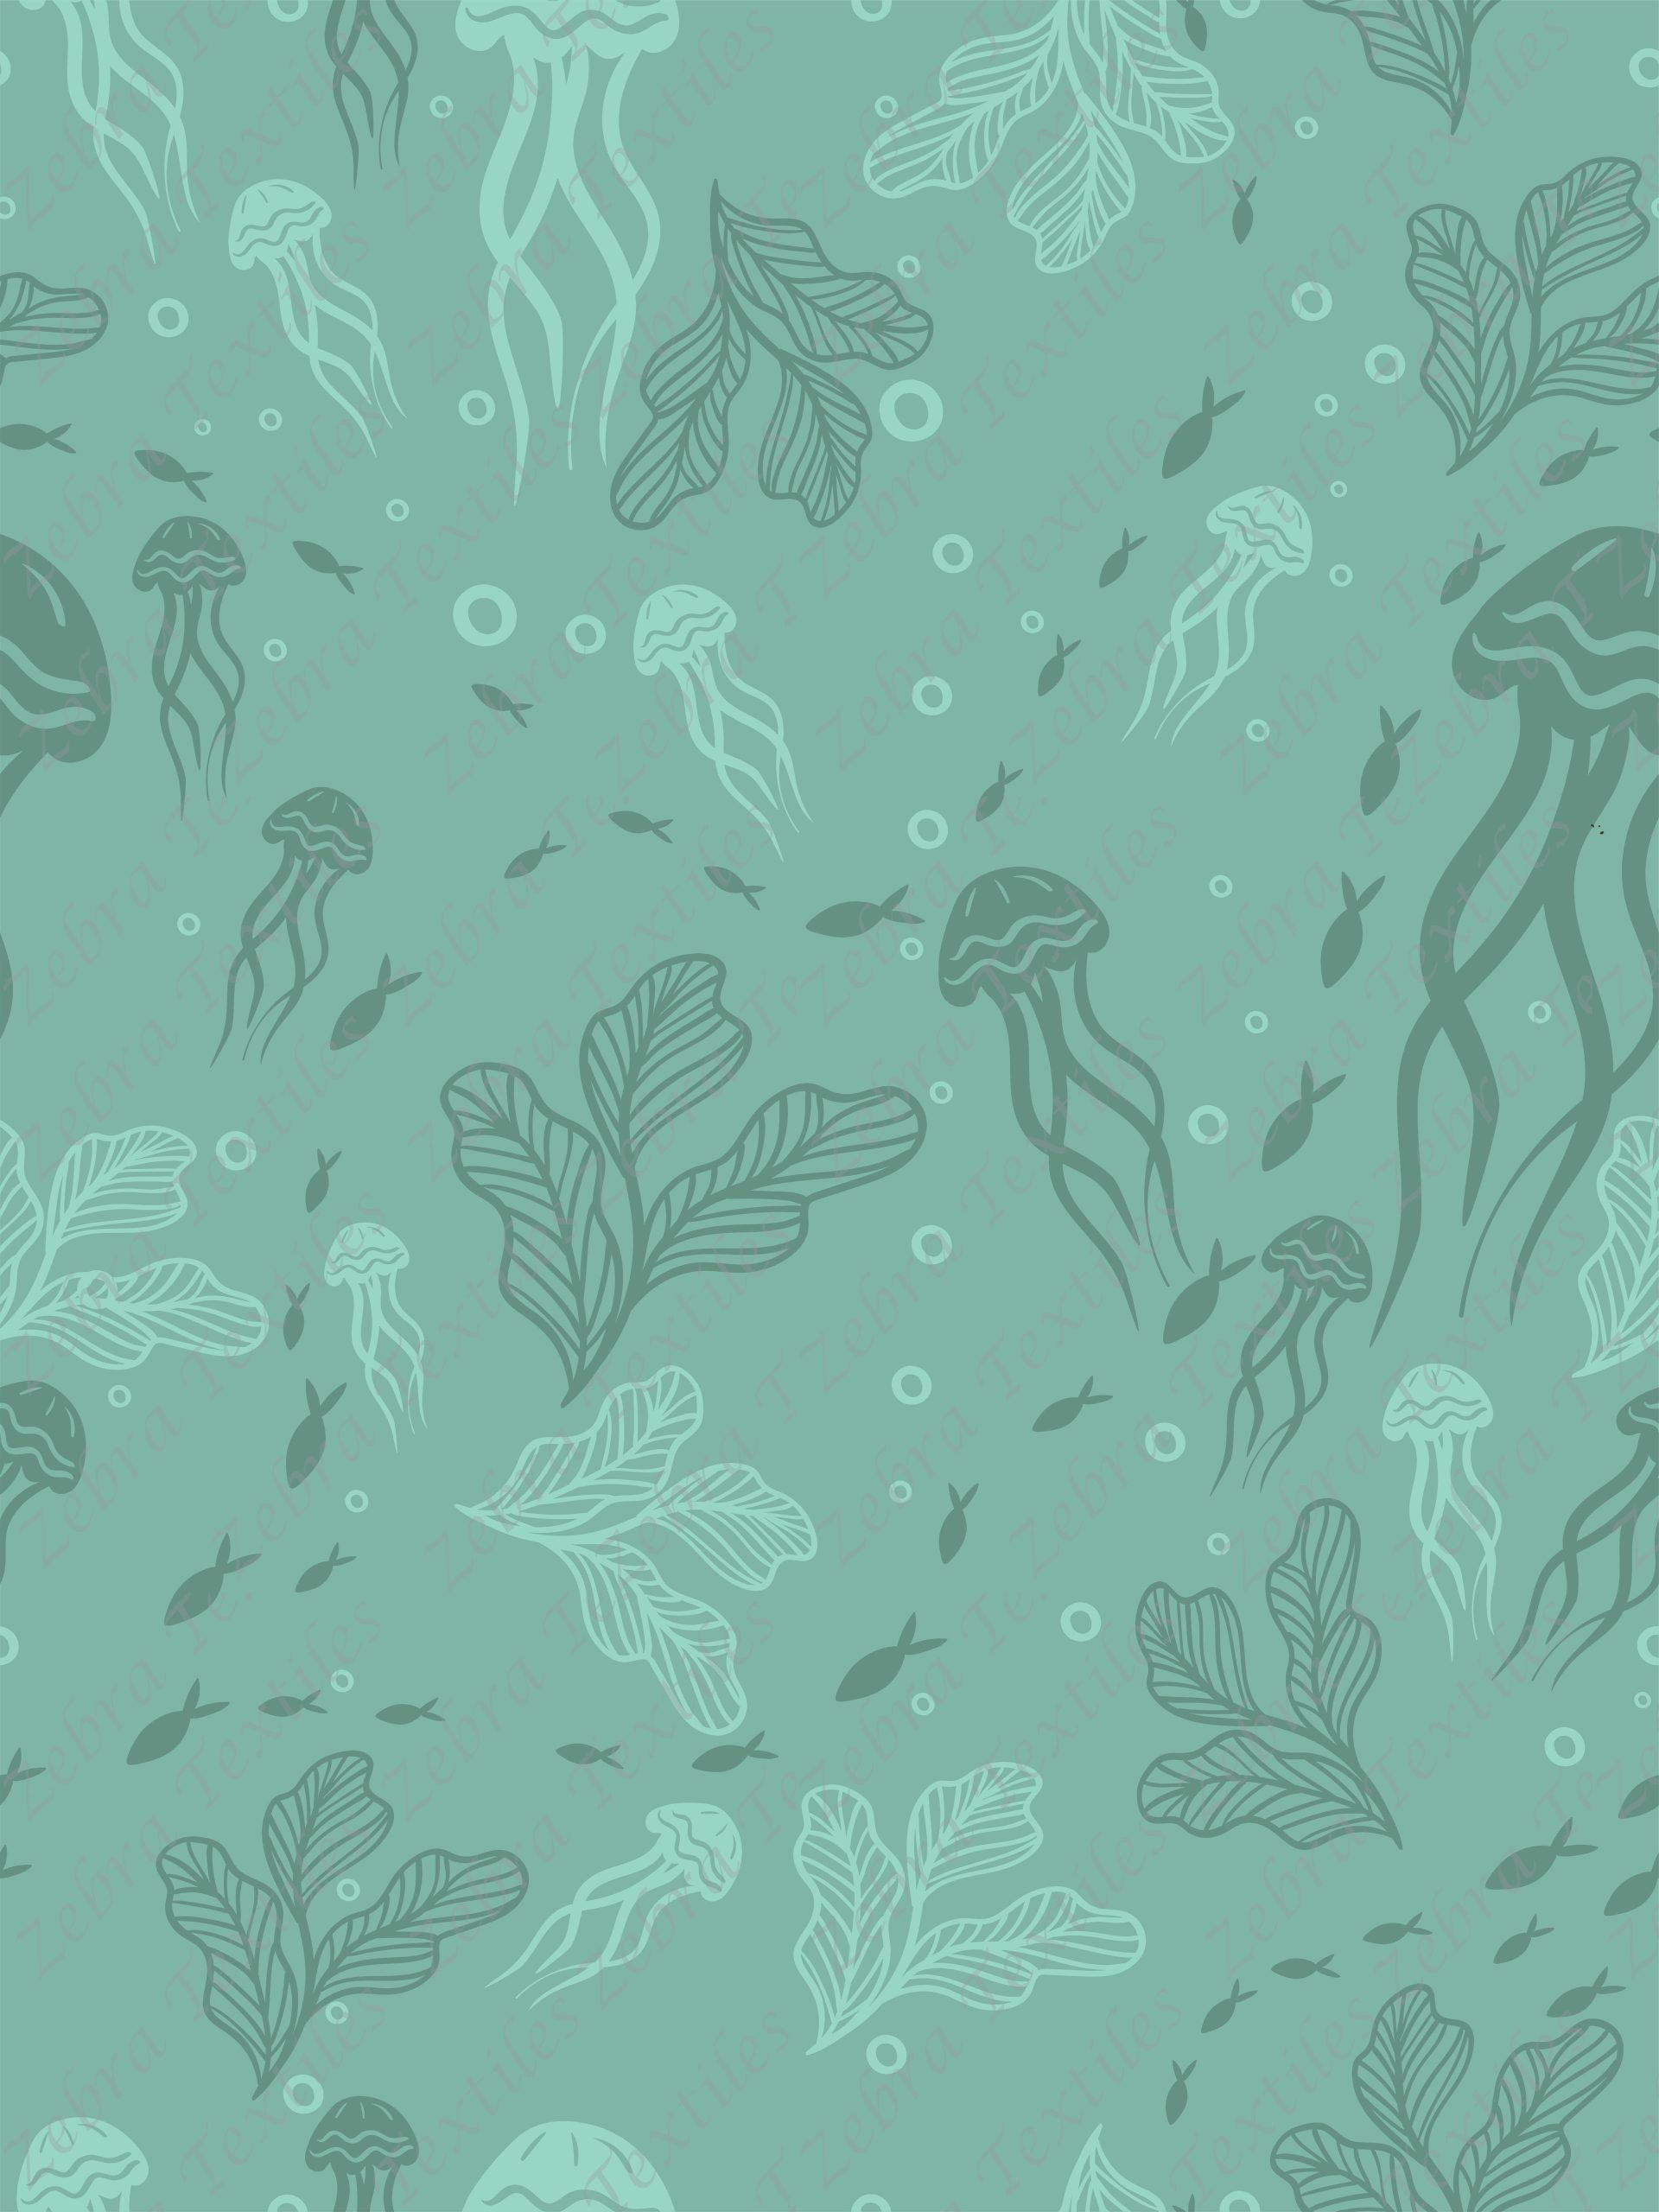 Méduse dans la mer fond aqua